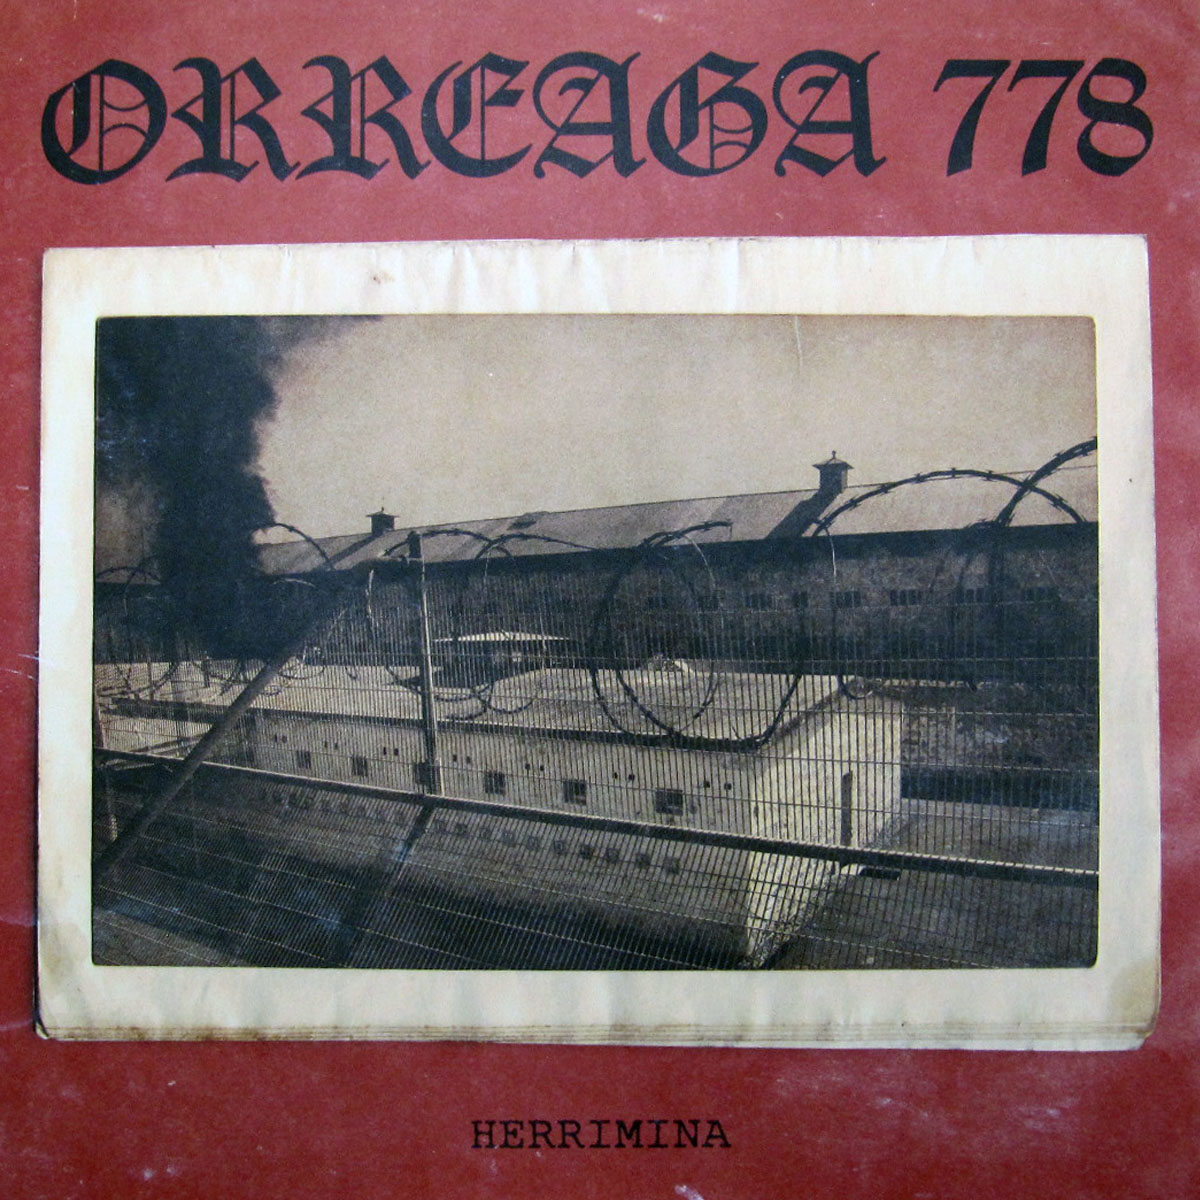 ORREAGA 778 - HERRIMINA